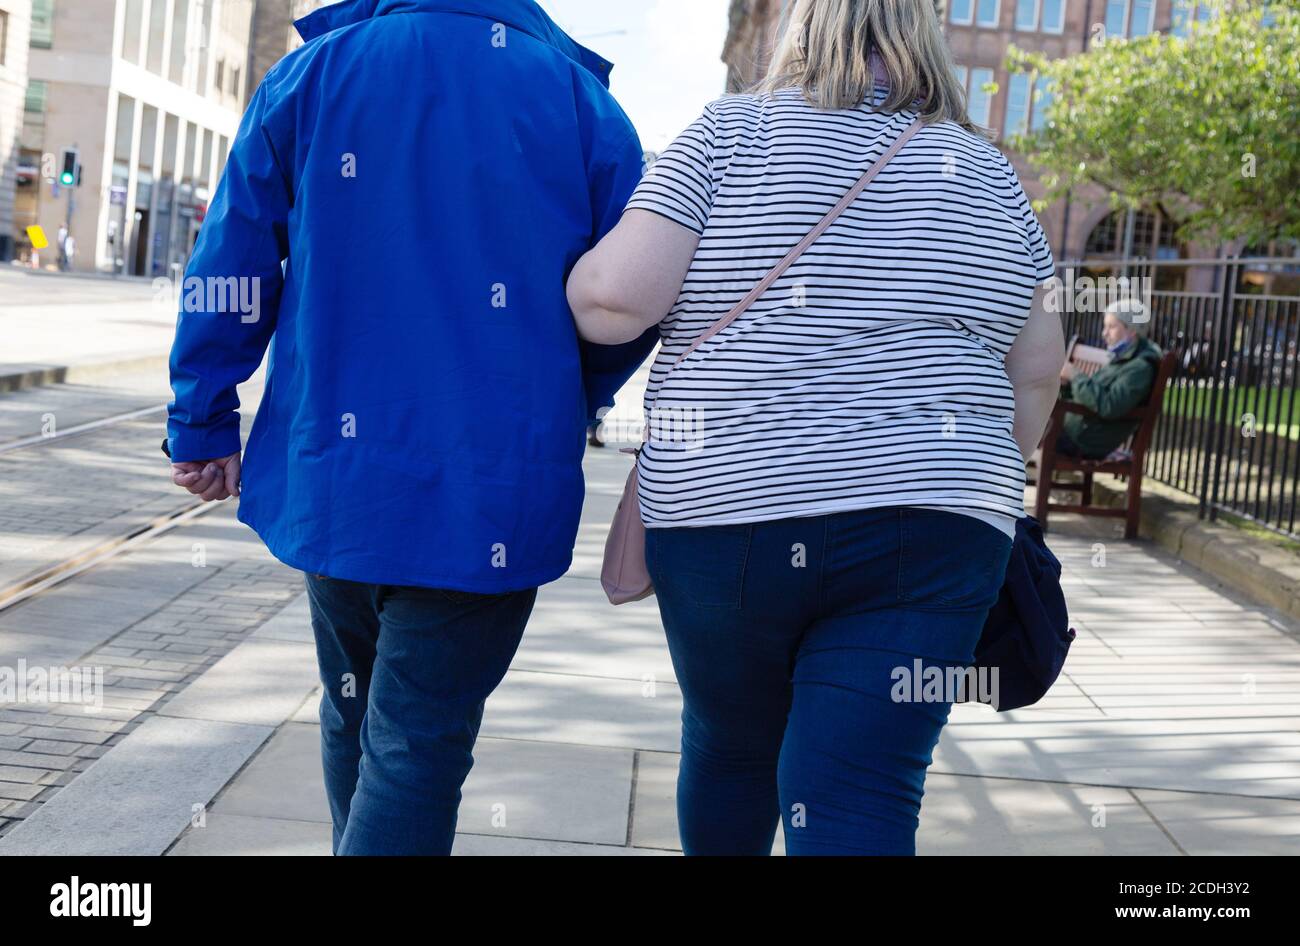 Obesità Scozia - vista posteriore di una donna obesa che cammina per strada, esempio di obesità UK; Edimburgo Scozia UK Foto Stock